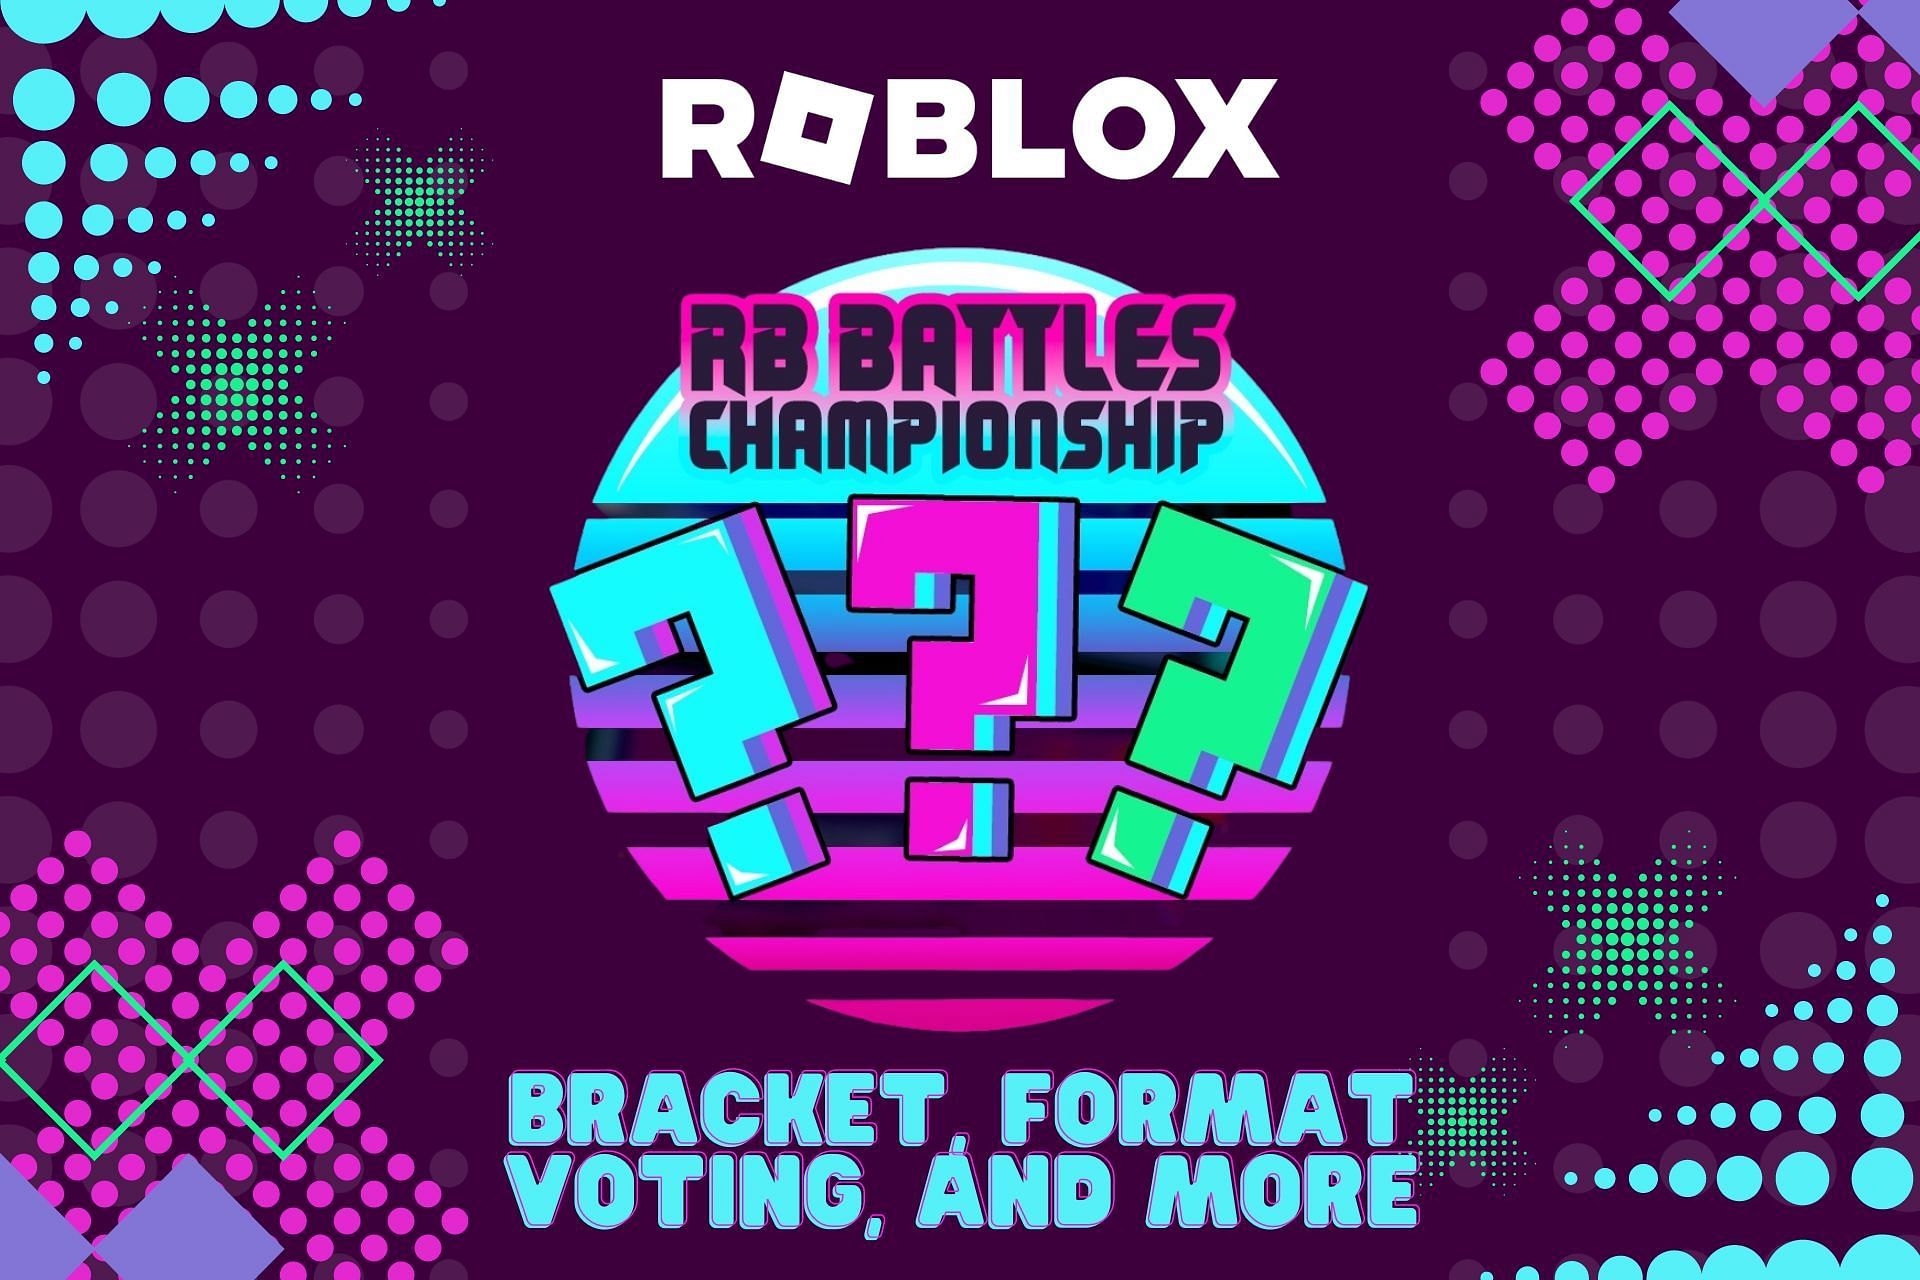 Full championship bracket revealed for Roblox RB Battles Season 3